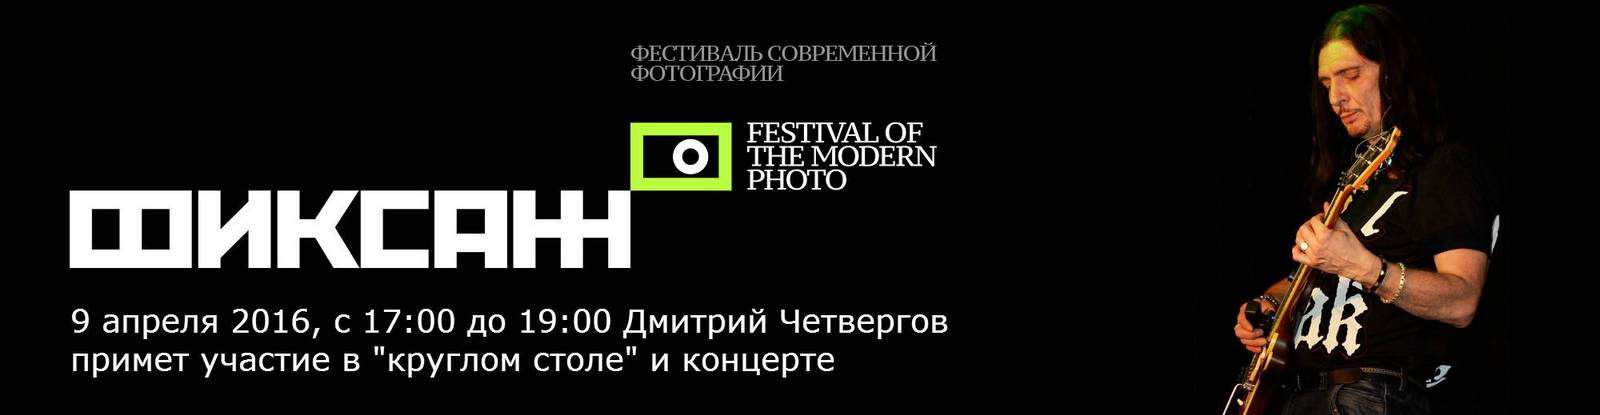 Фестиваль современной фотографии «Фиксаж»